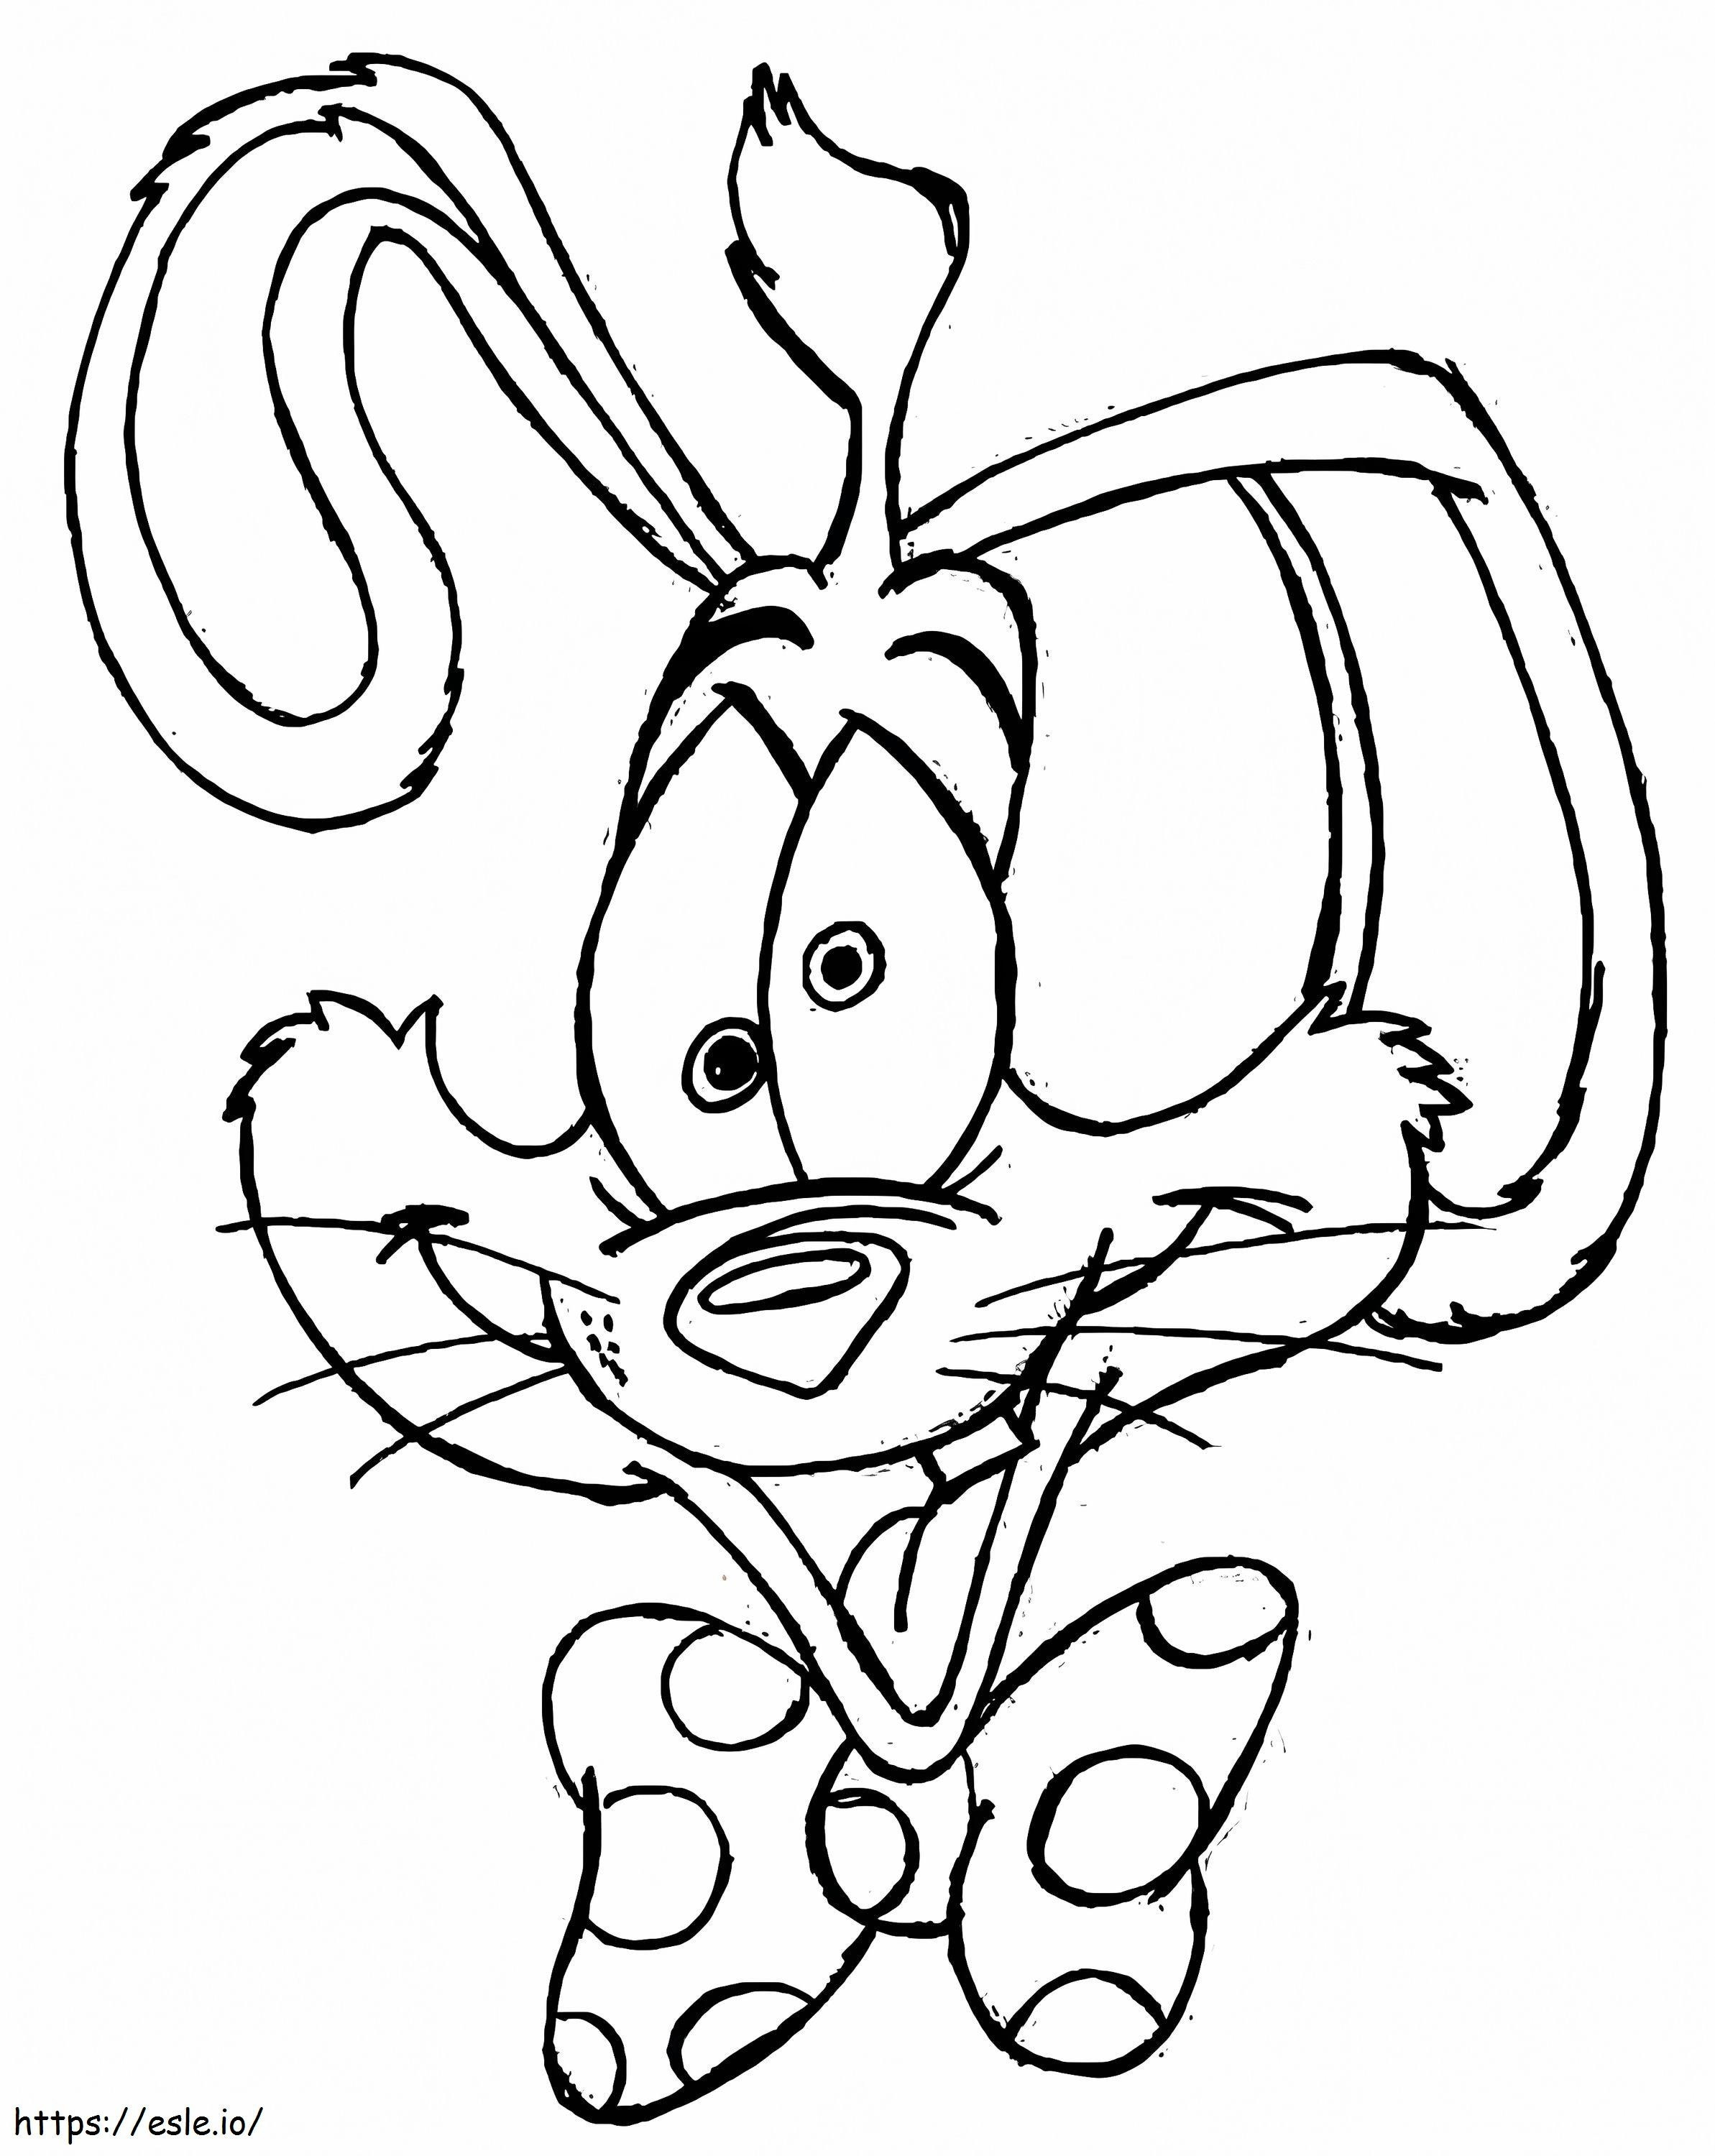 Coloriage Le fou Roger Rabbit à imprimer dessin